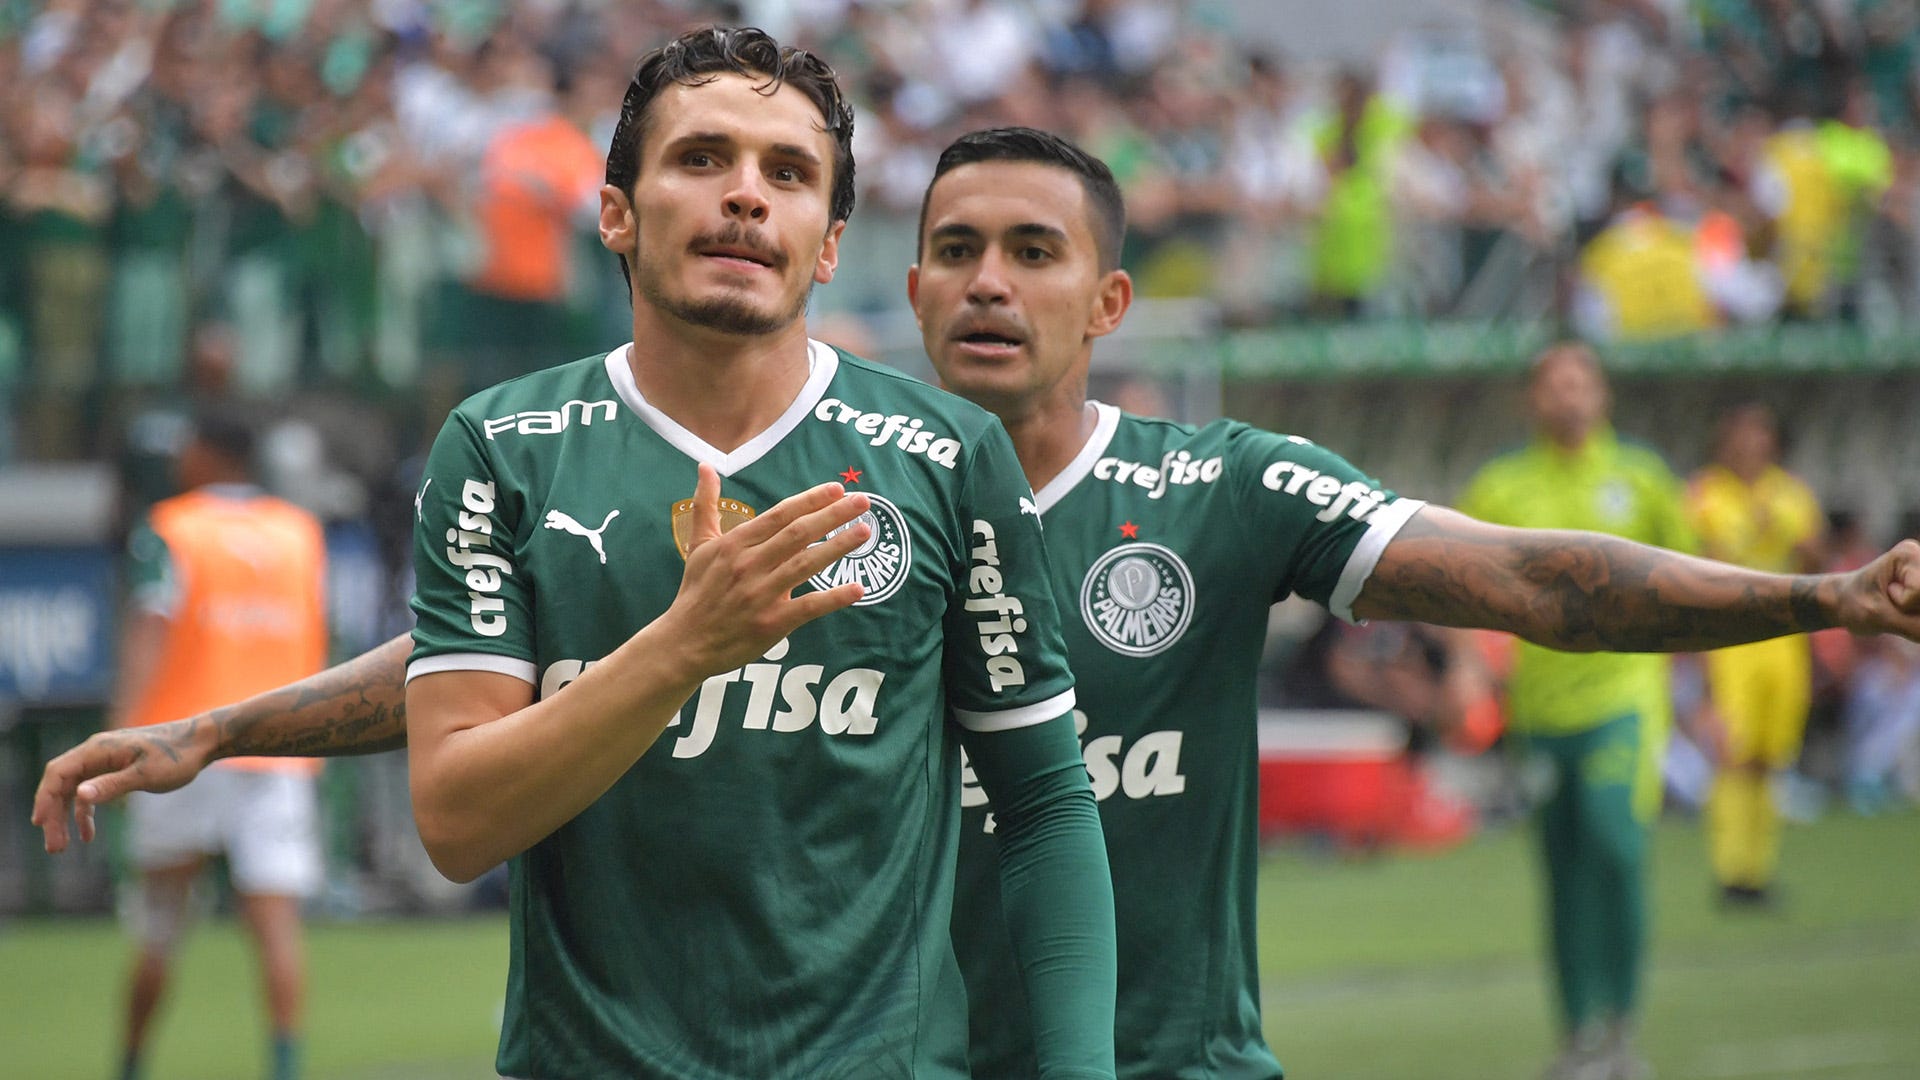 Palmeiras x São Paulo - AO VIVO - 03/04/2022 - Final do Paulistão